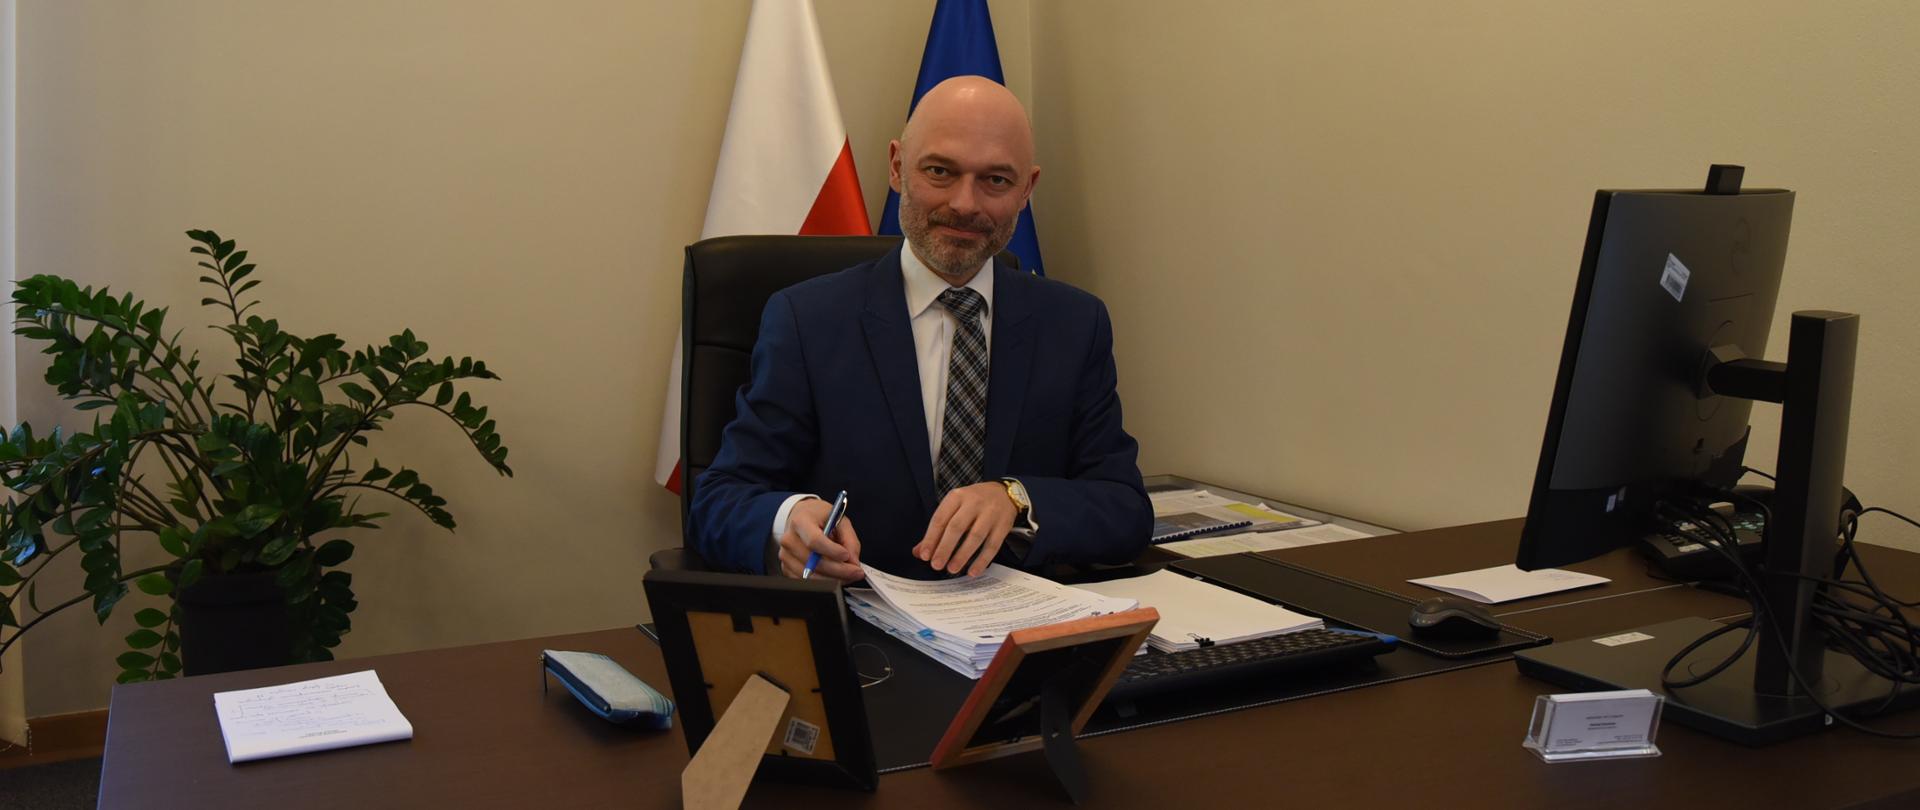 Minister Michał Kurtyka podczas podpisania umowy na dofinansowanie inwestycji